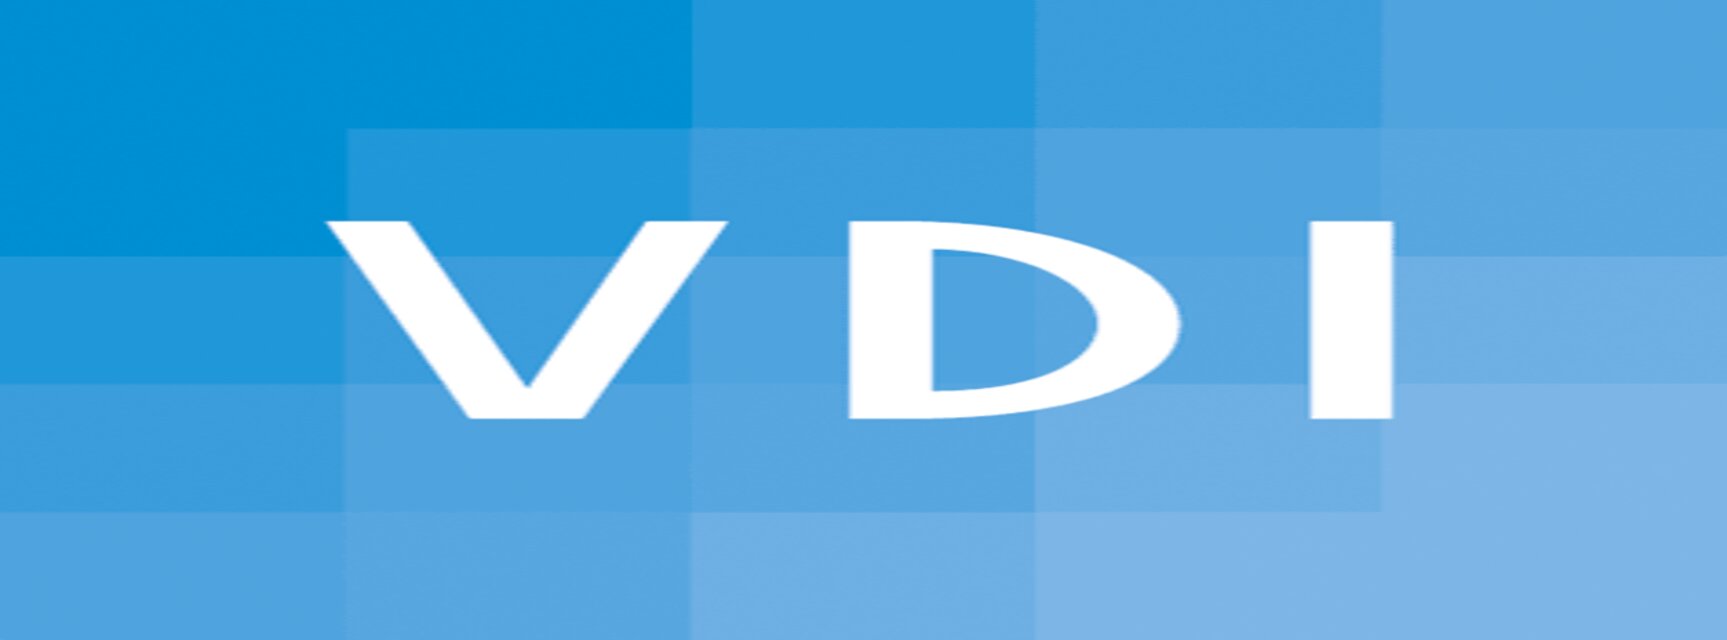 VDI - Verein deutscher Ingenieure